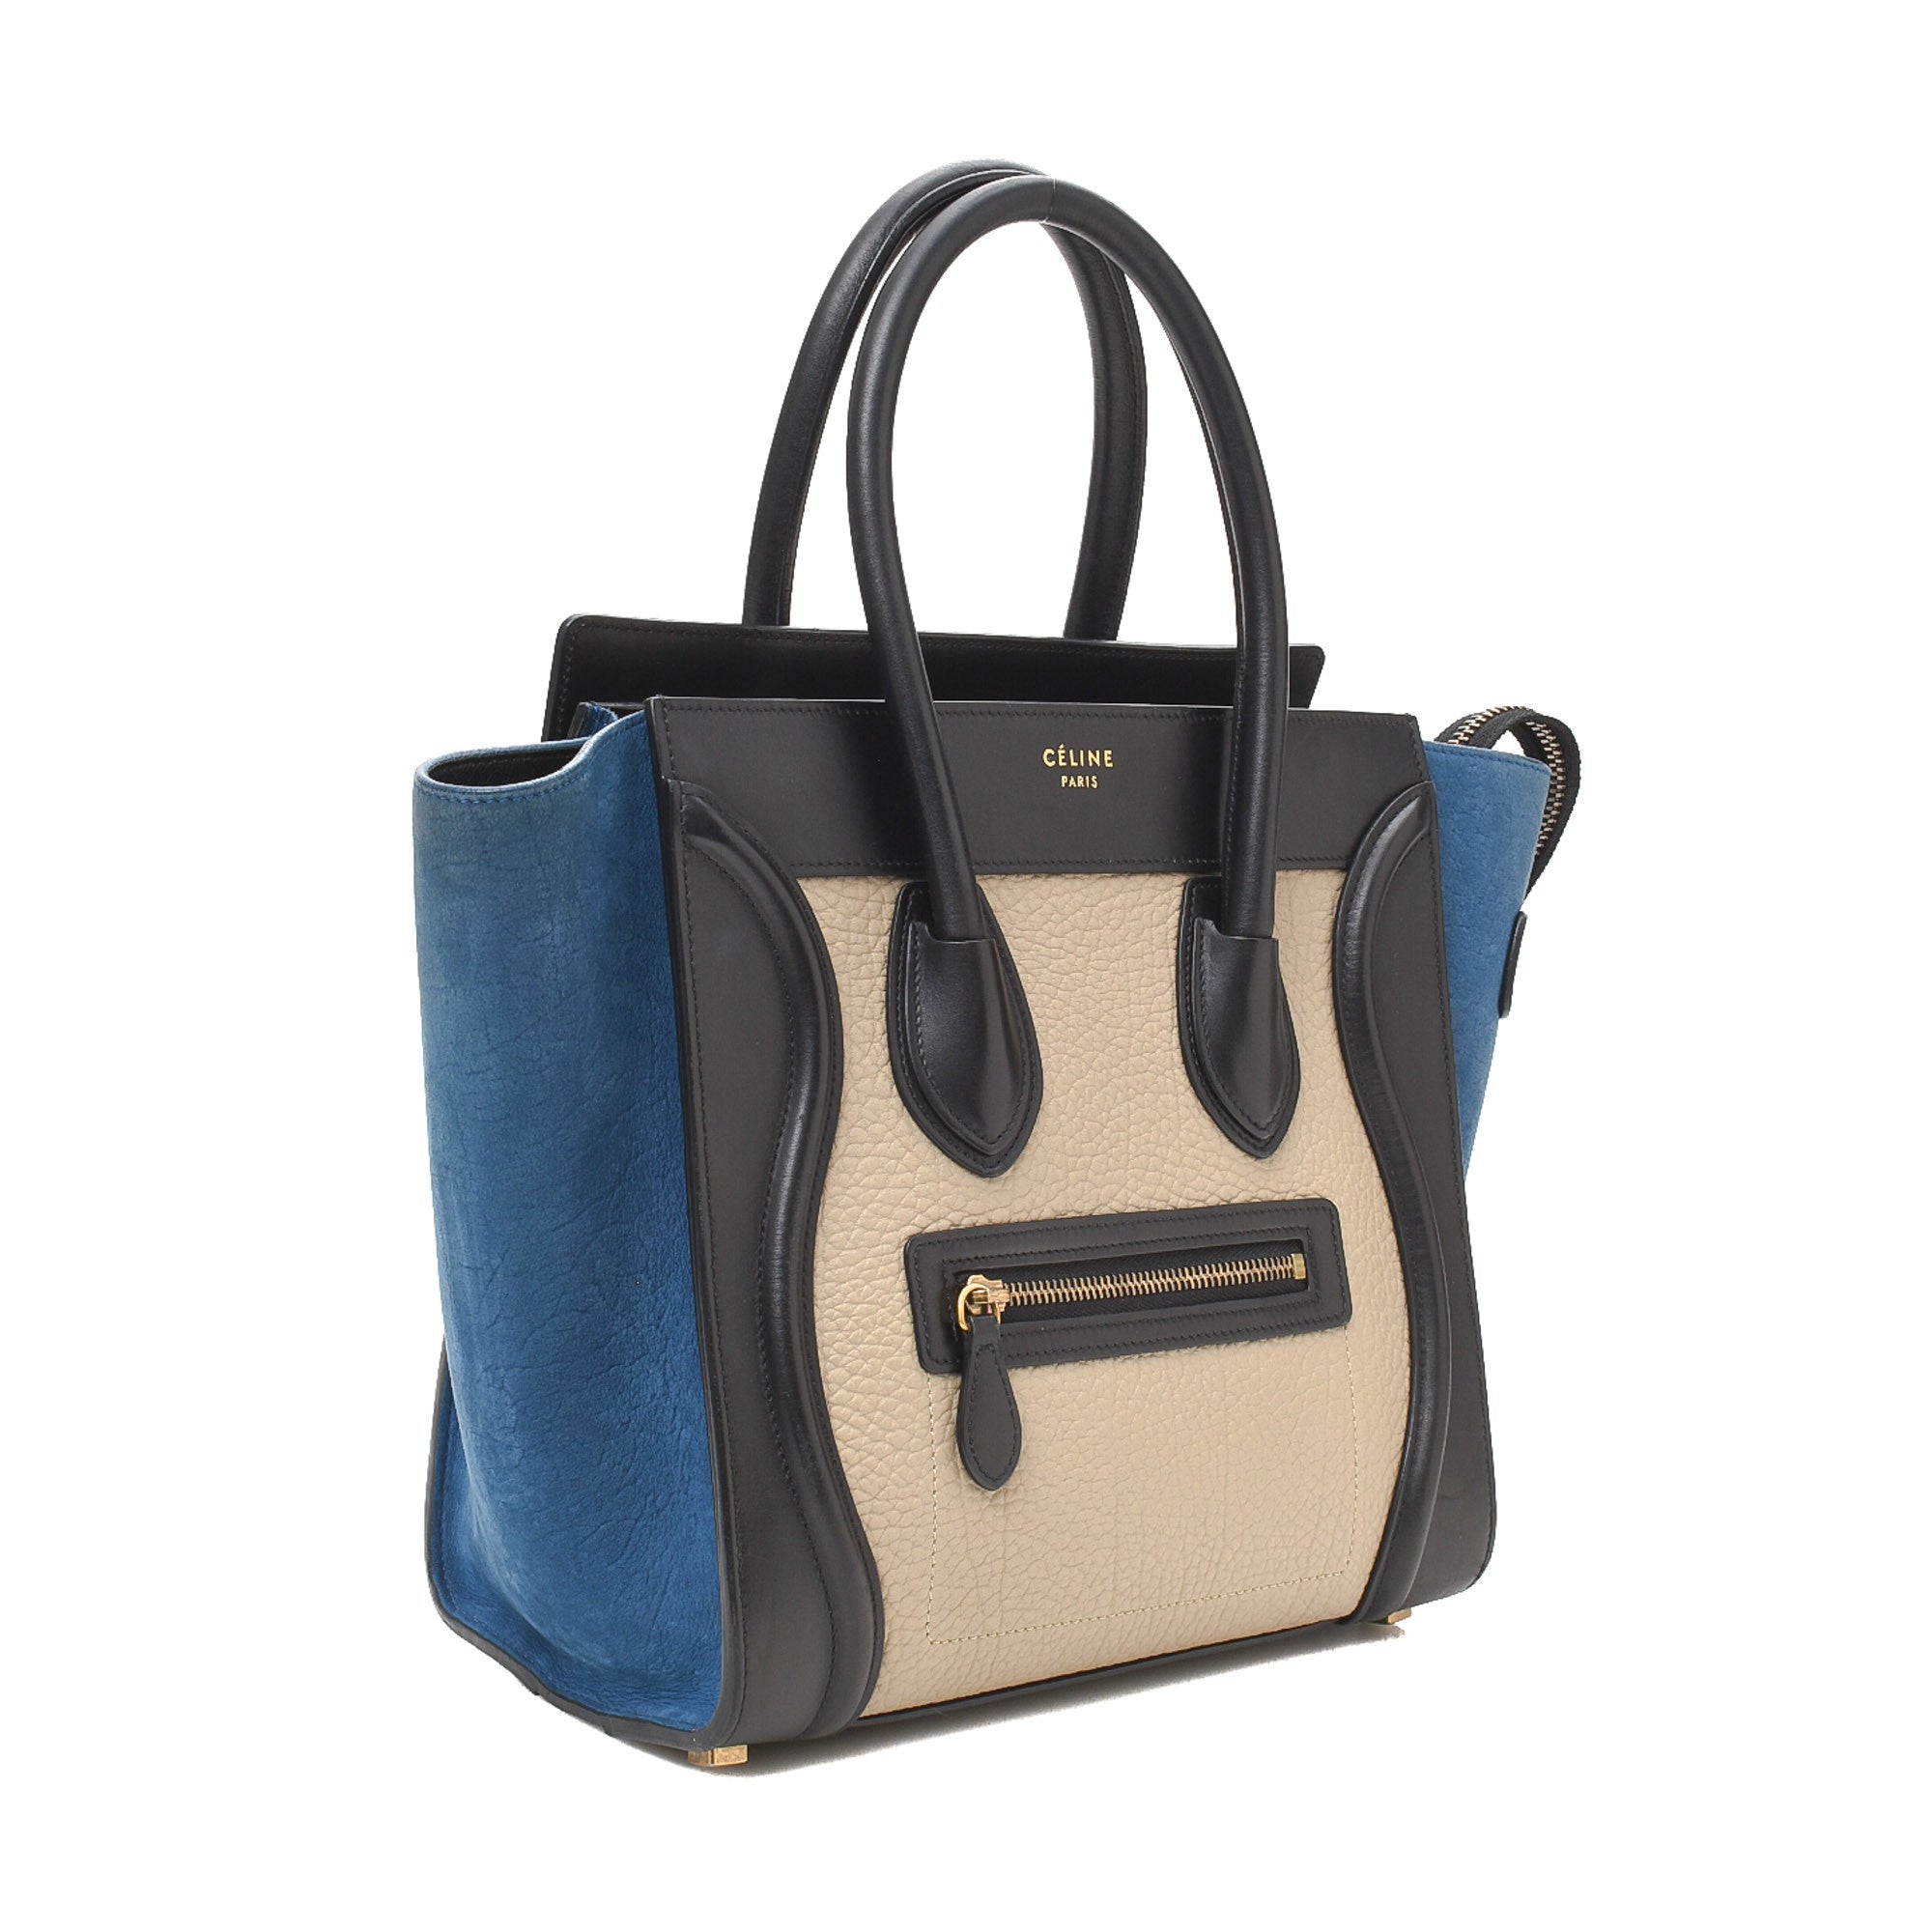 Celine Mini Luggage Tote - Blue Totes, Handbags - CEL266782